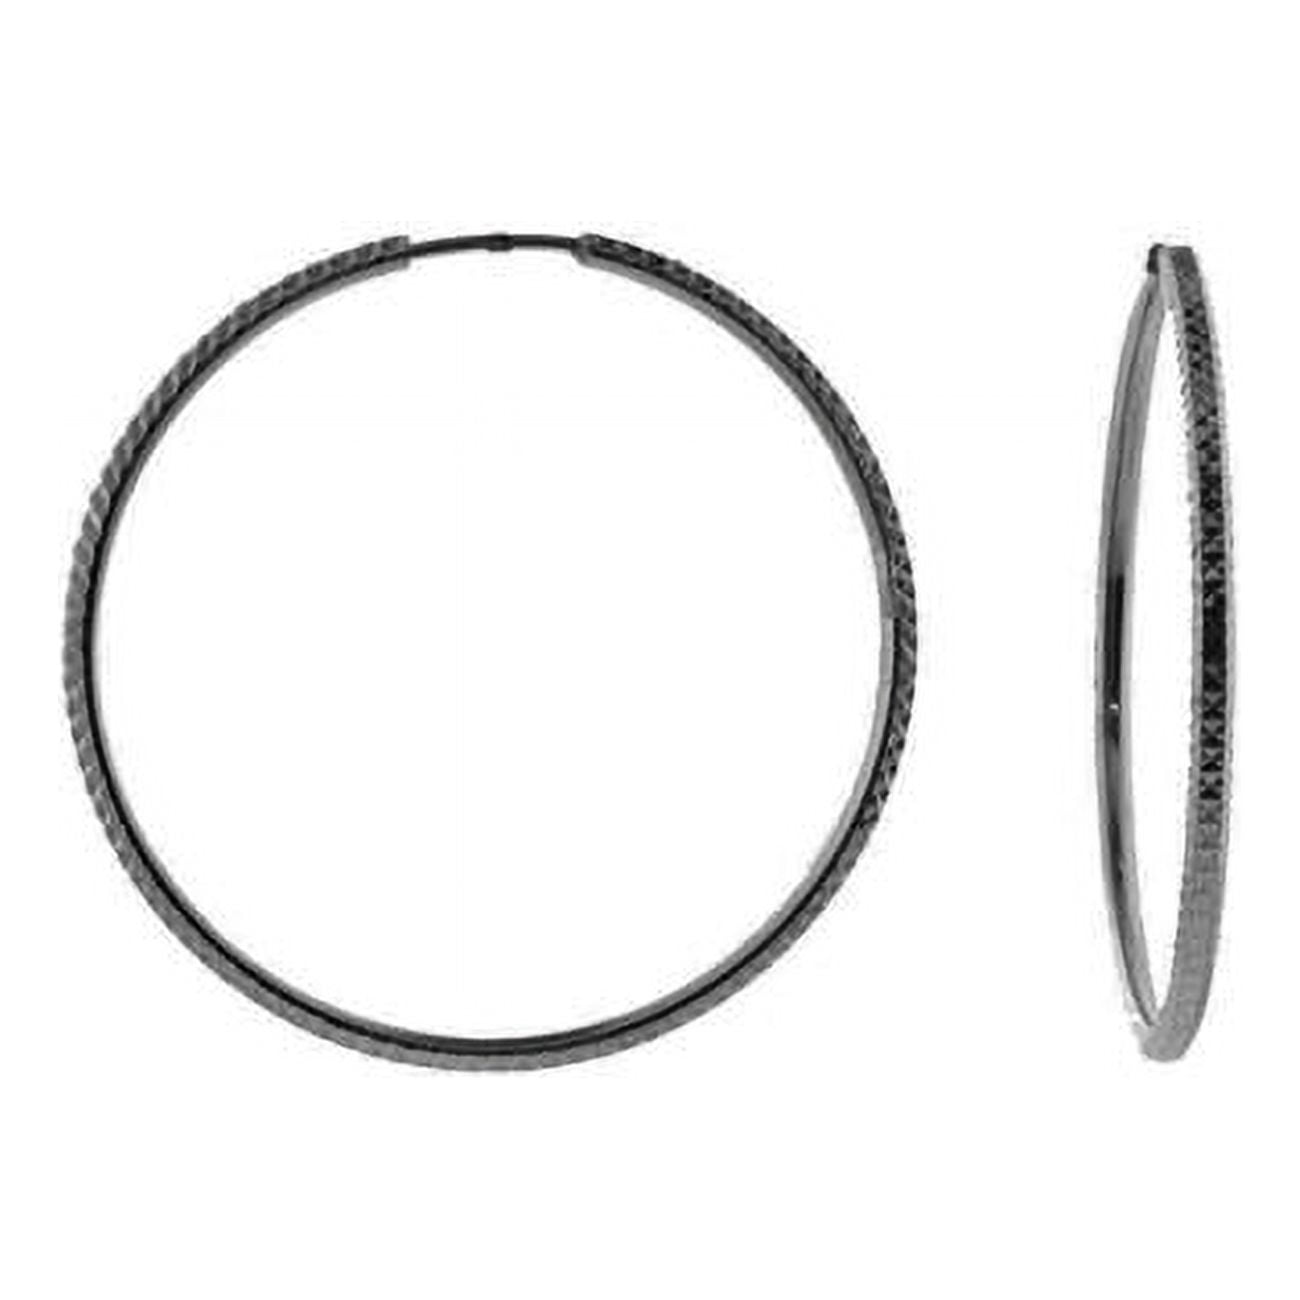 405254b Diamond Cut Hoop Earrings In Sterling Silver Black Rhodium